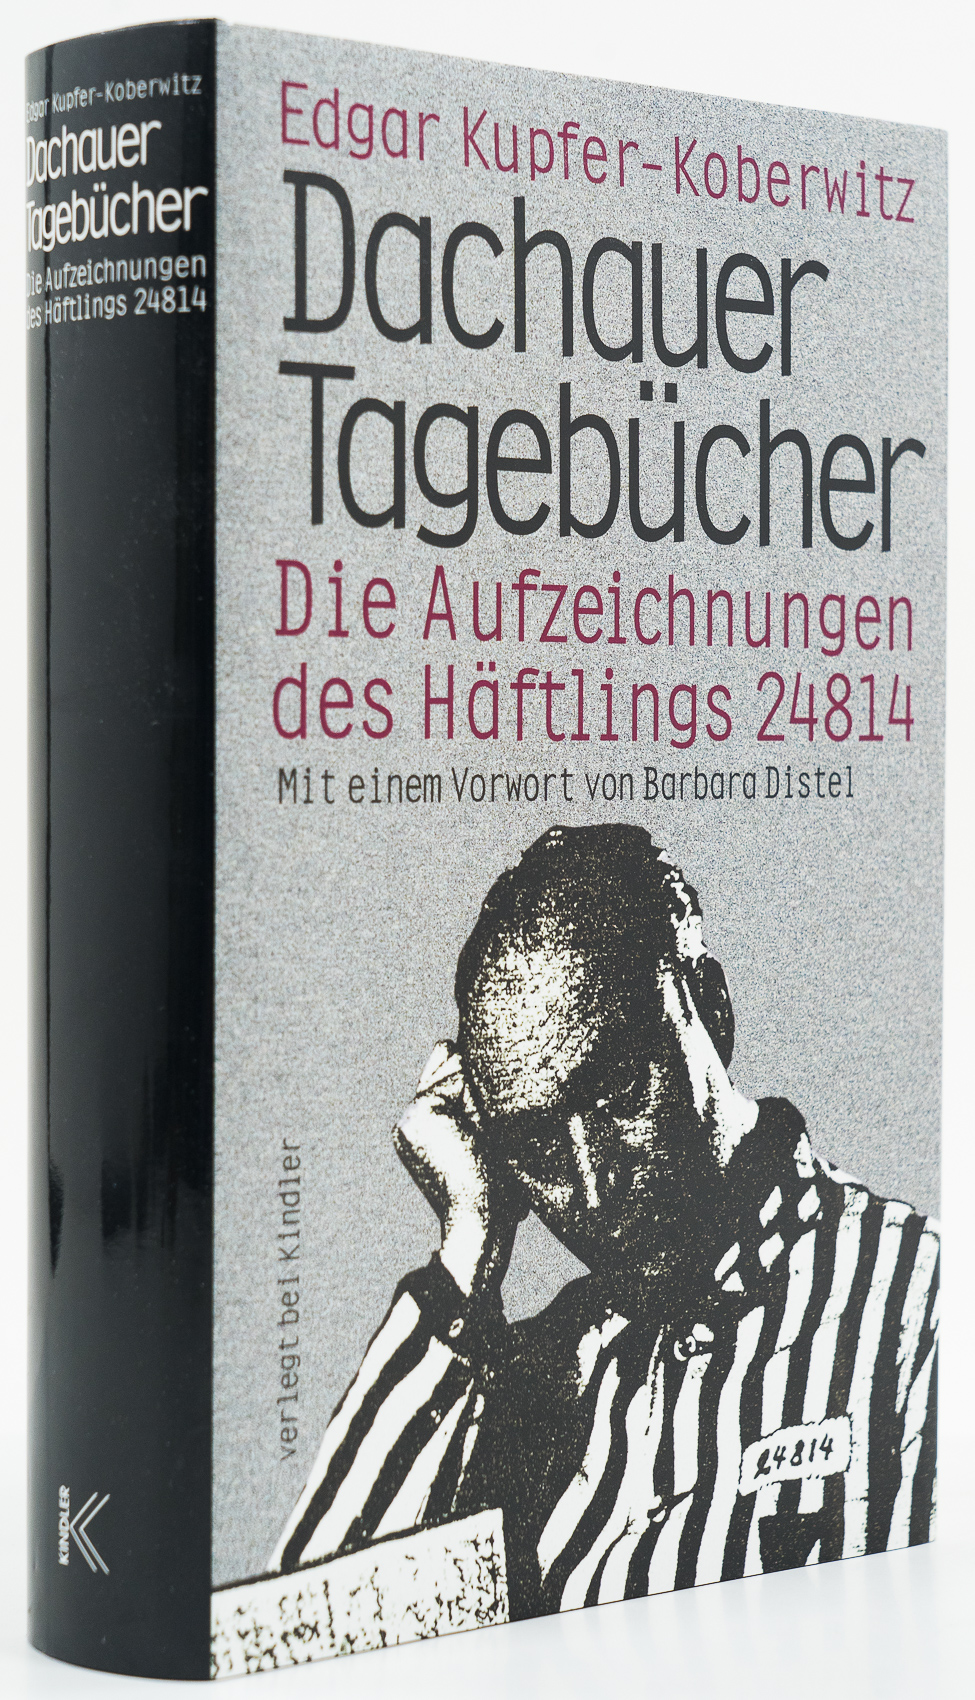 Dachauer Tagebücher. Die Aufzeichnungen des Häftlings 24814. - - Kupfer-Koberwitz, Edgar